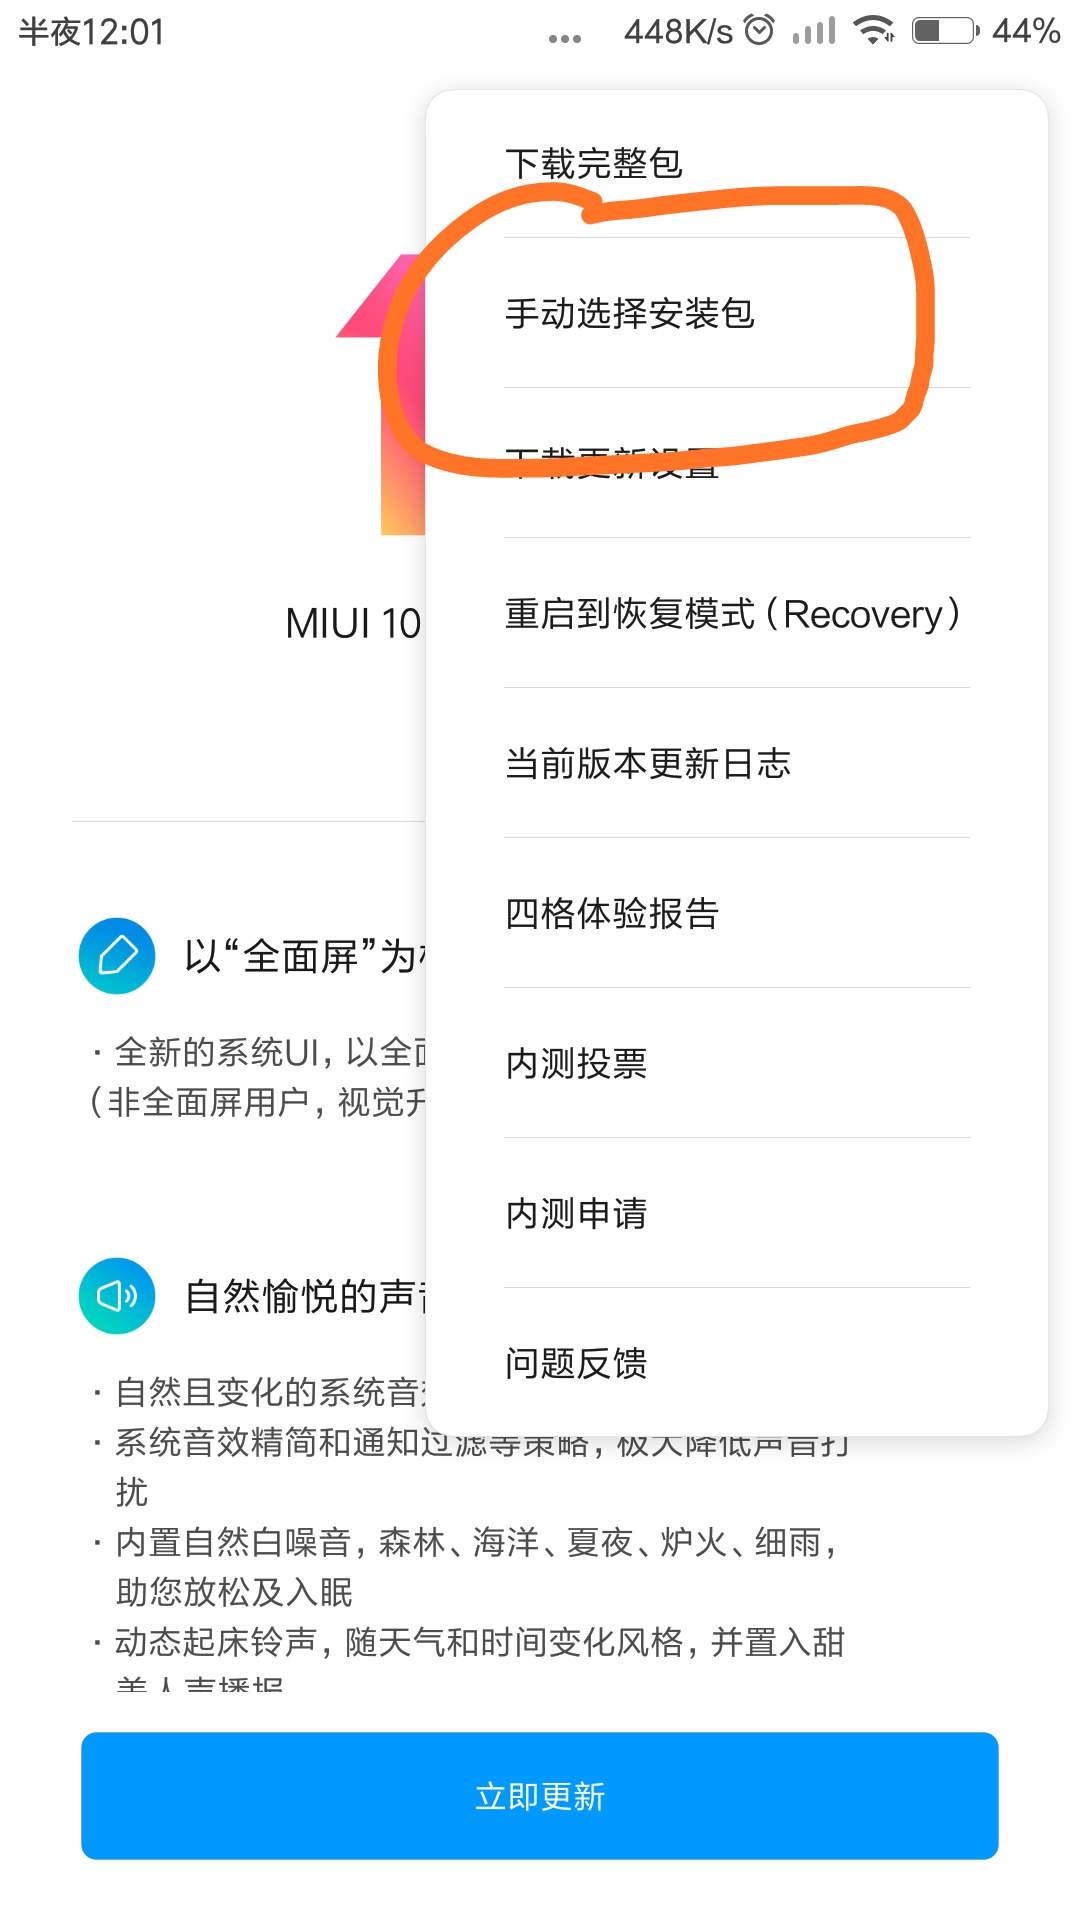 非常简单卡刷miui10开发版，都能学好！